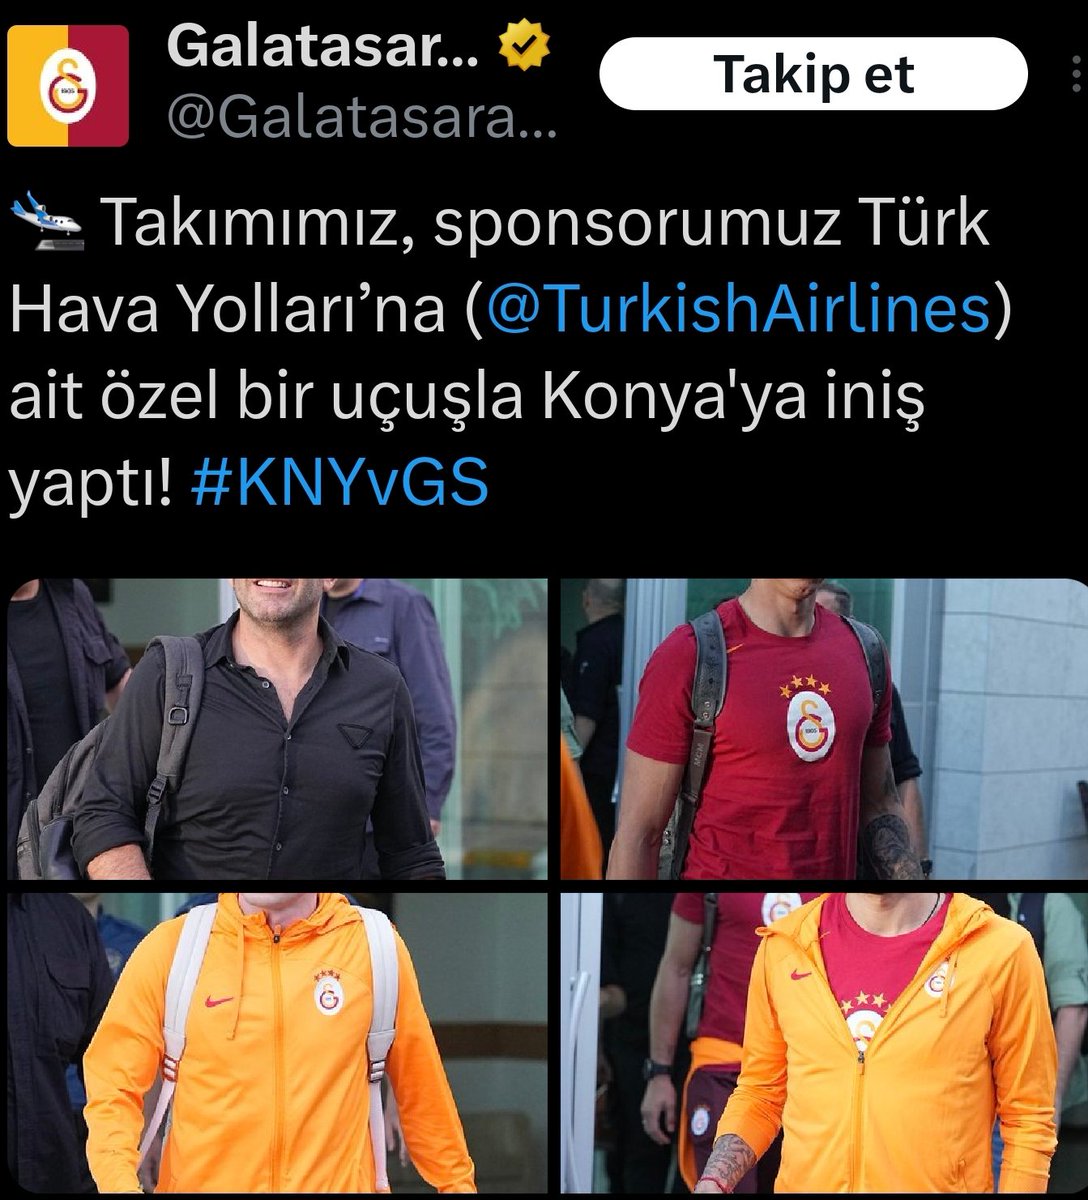 Aynı gün içinde Türk Hava Yolları'nın iki ayrı sponsor takımına farklı yaklaşımı.

Türkiye'de futbol hiç hak etmediği bir değer görürken çok daha başarılı olunan spor dalları ve takımları hak ettiği değeri görmüyor.